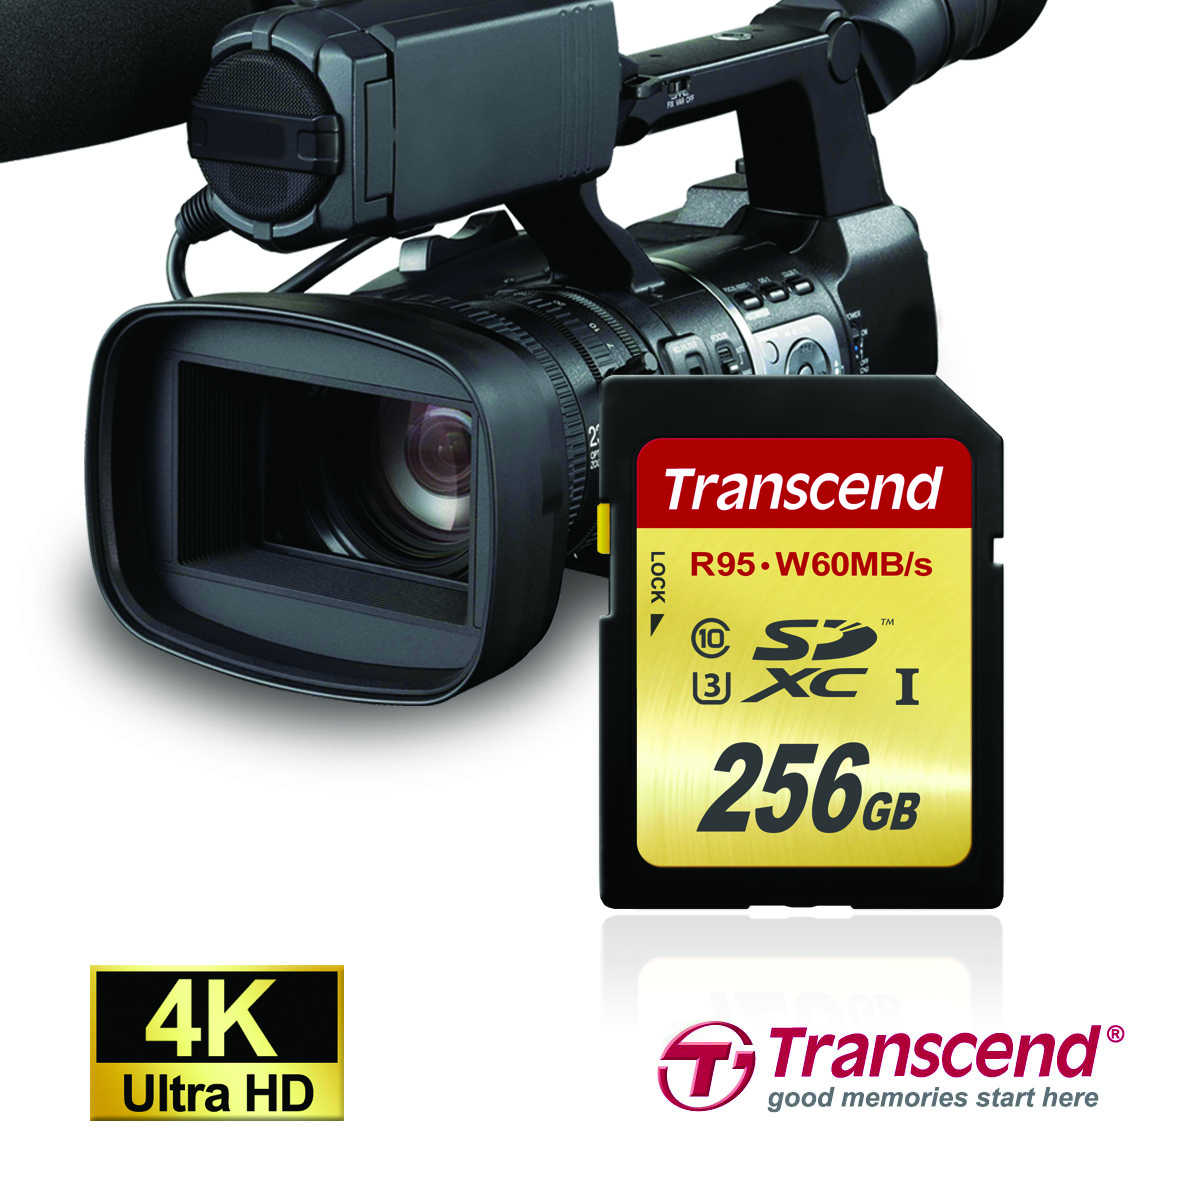 Transcend-PR-2015-01-20-SDXC-U3-256G